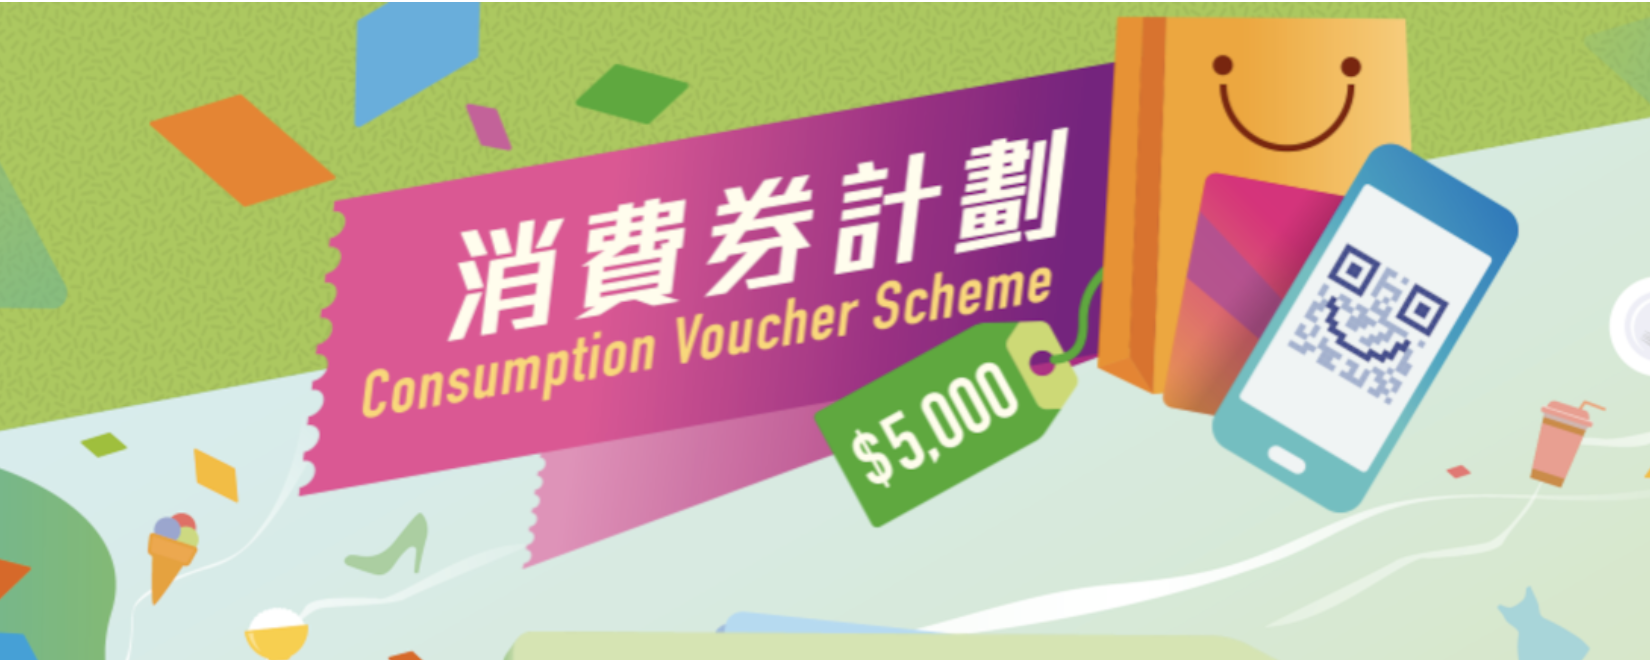 Hong Kong consumption voucher QR Code digital payments